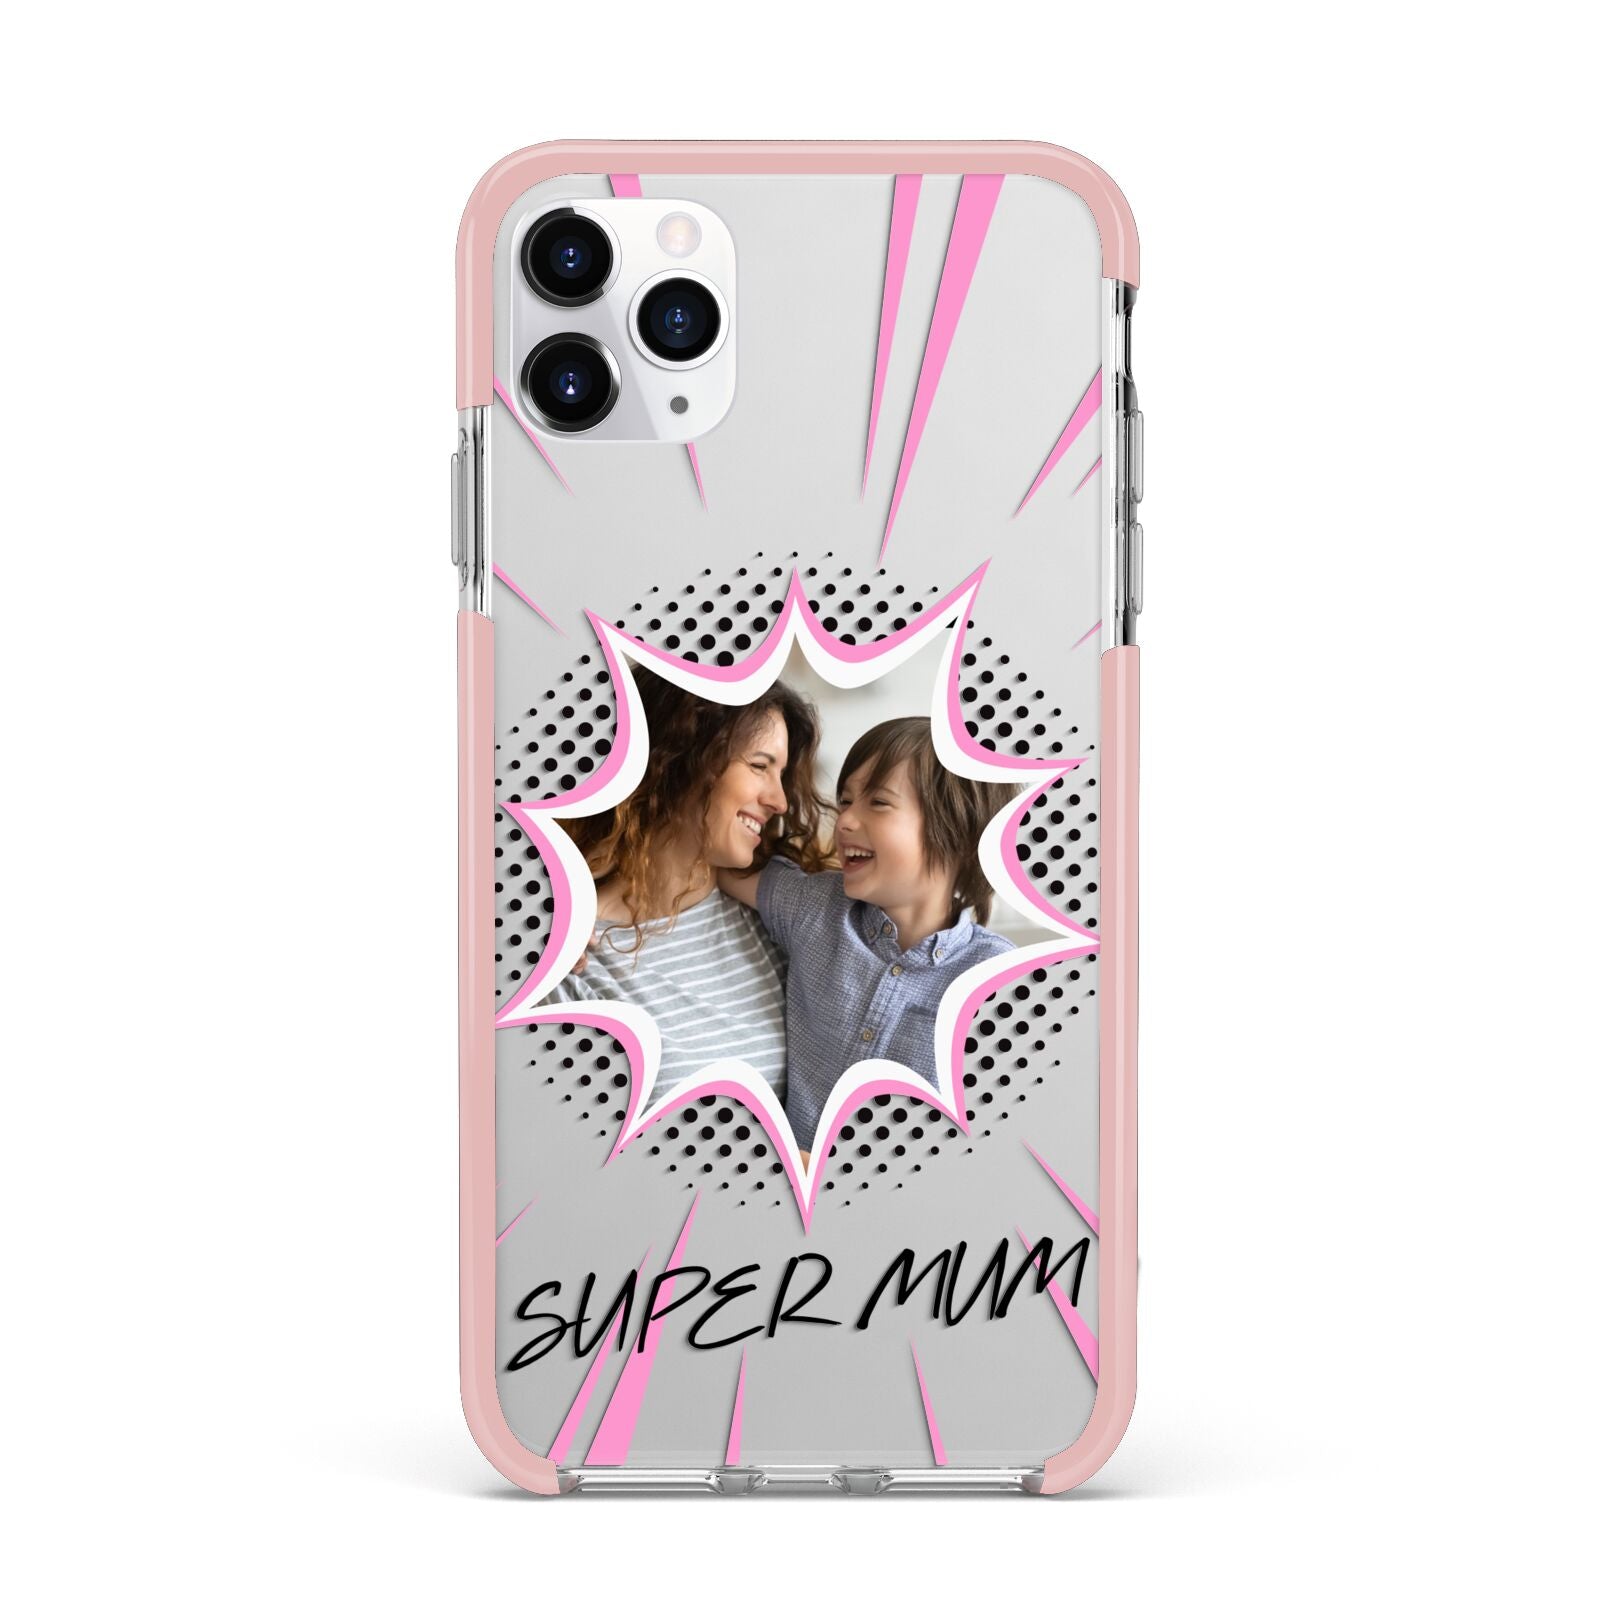 Super Mum Photo iPhone 11 Pro Max Impact Pink Edge Case